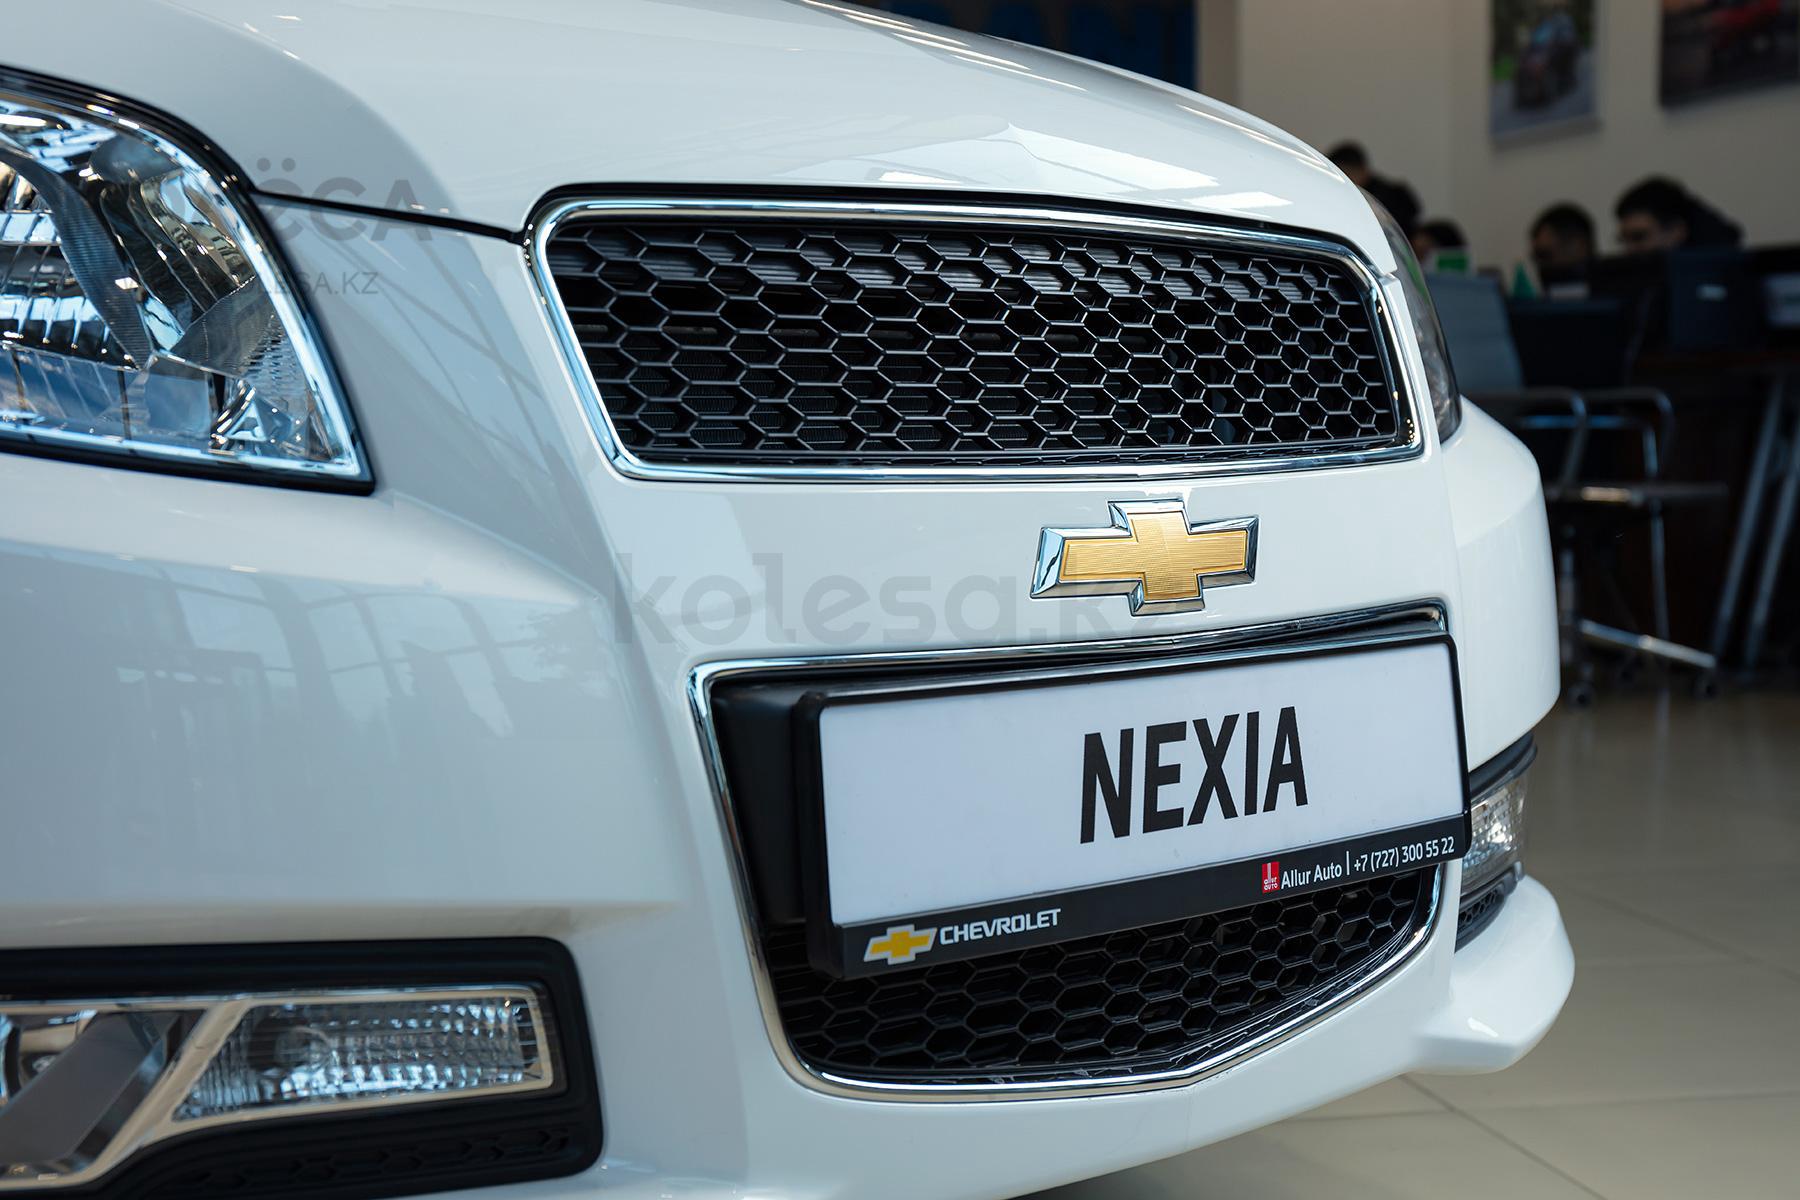 Chevrolet Nexia B класса 2020-2021 года